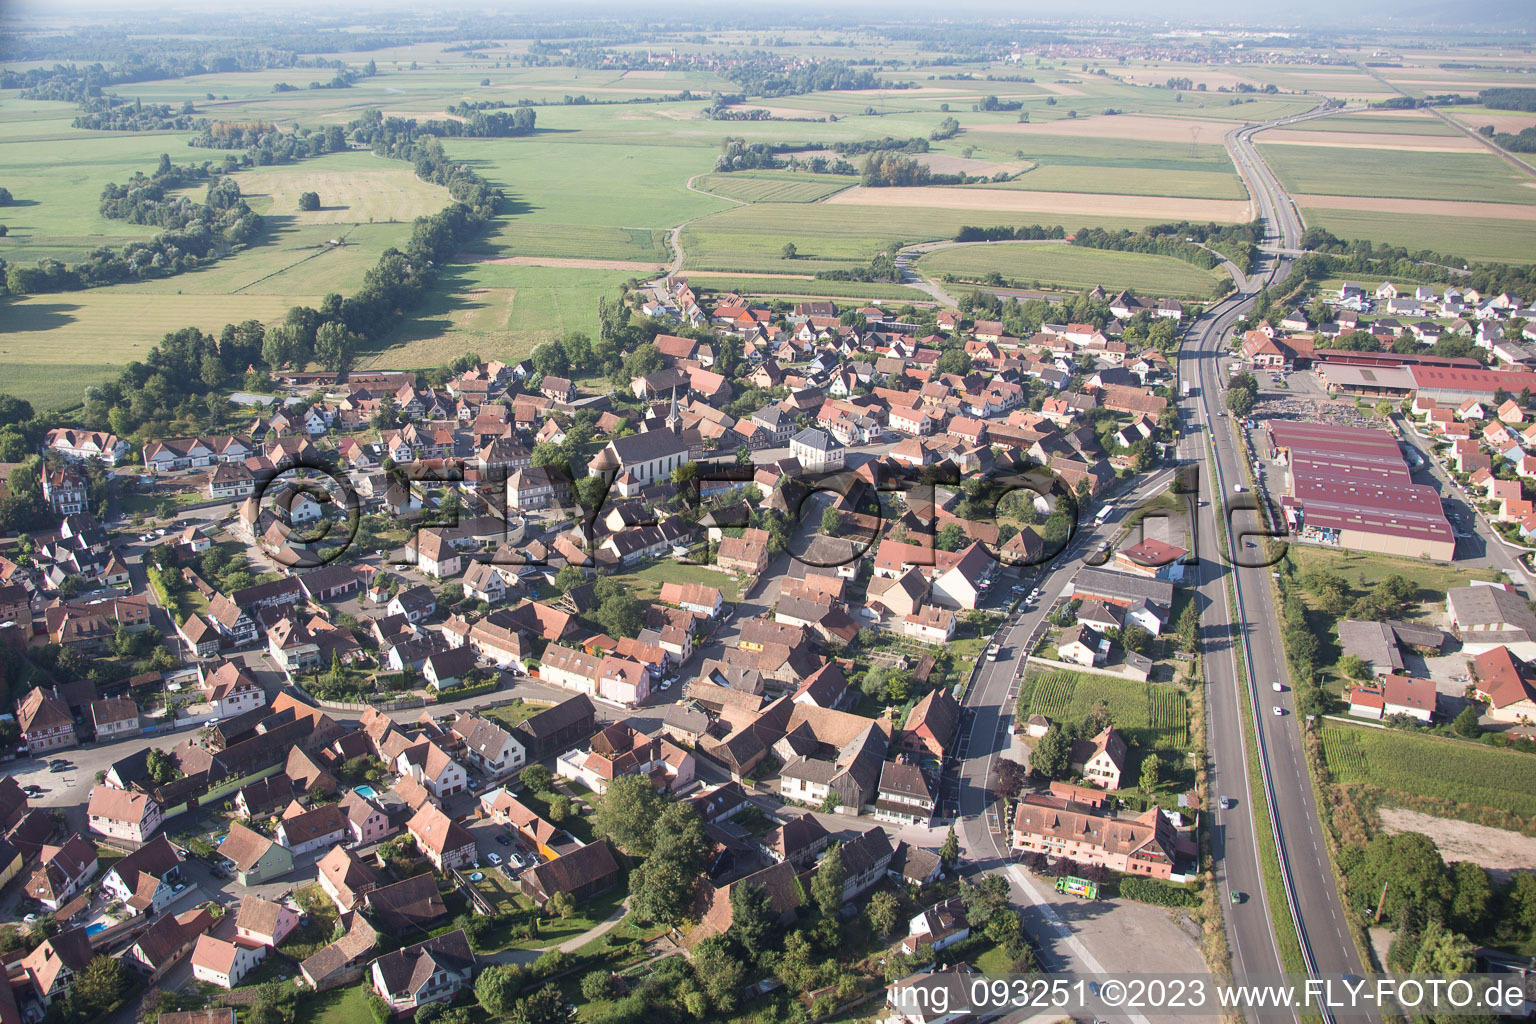 Kogenheim in the state Bas-Rhin, France